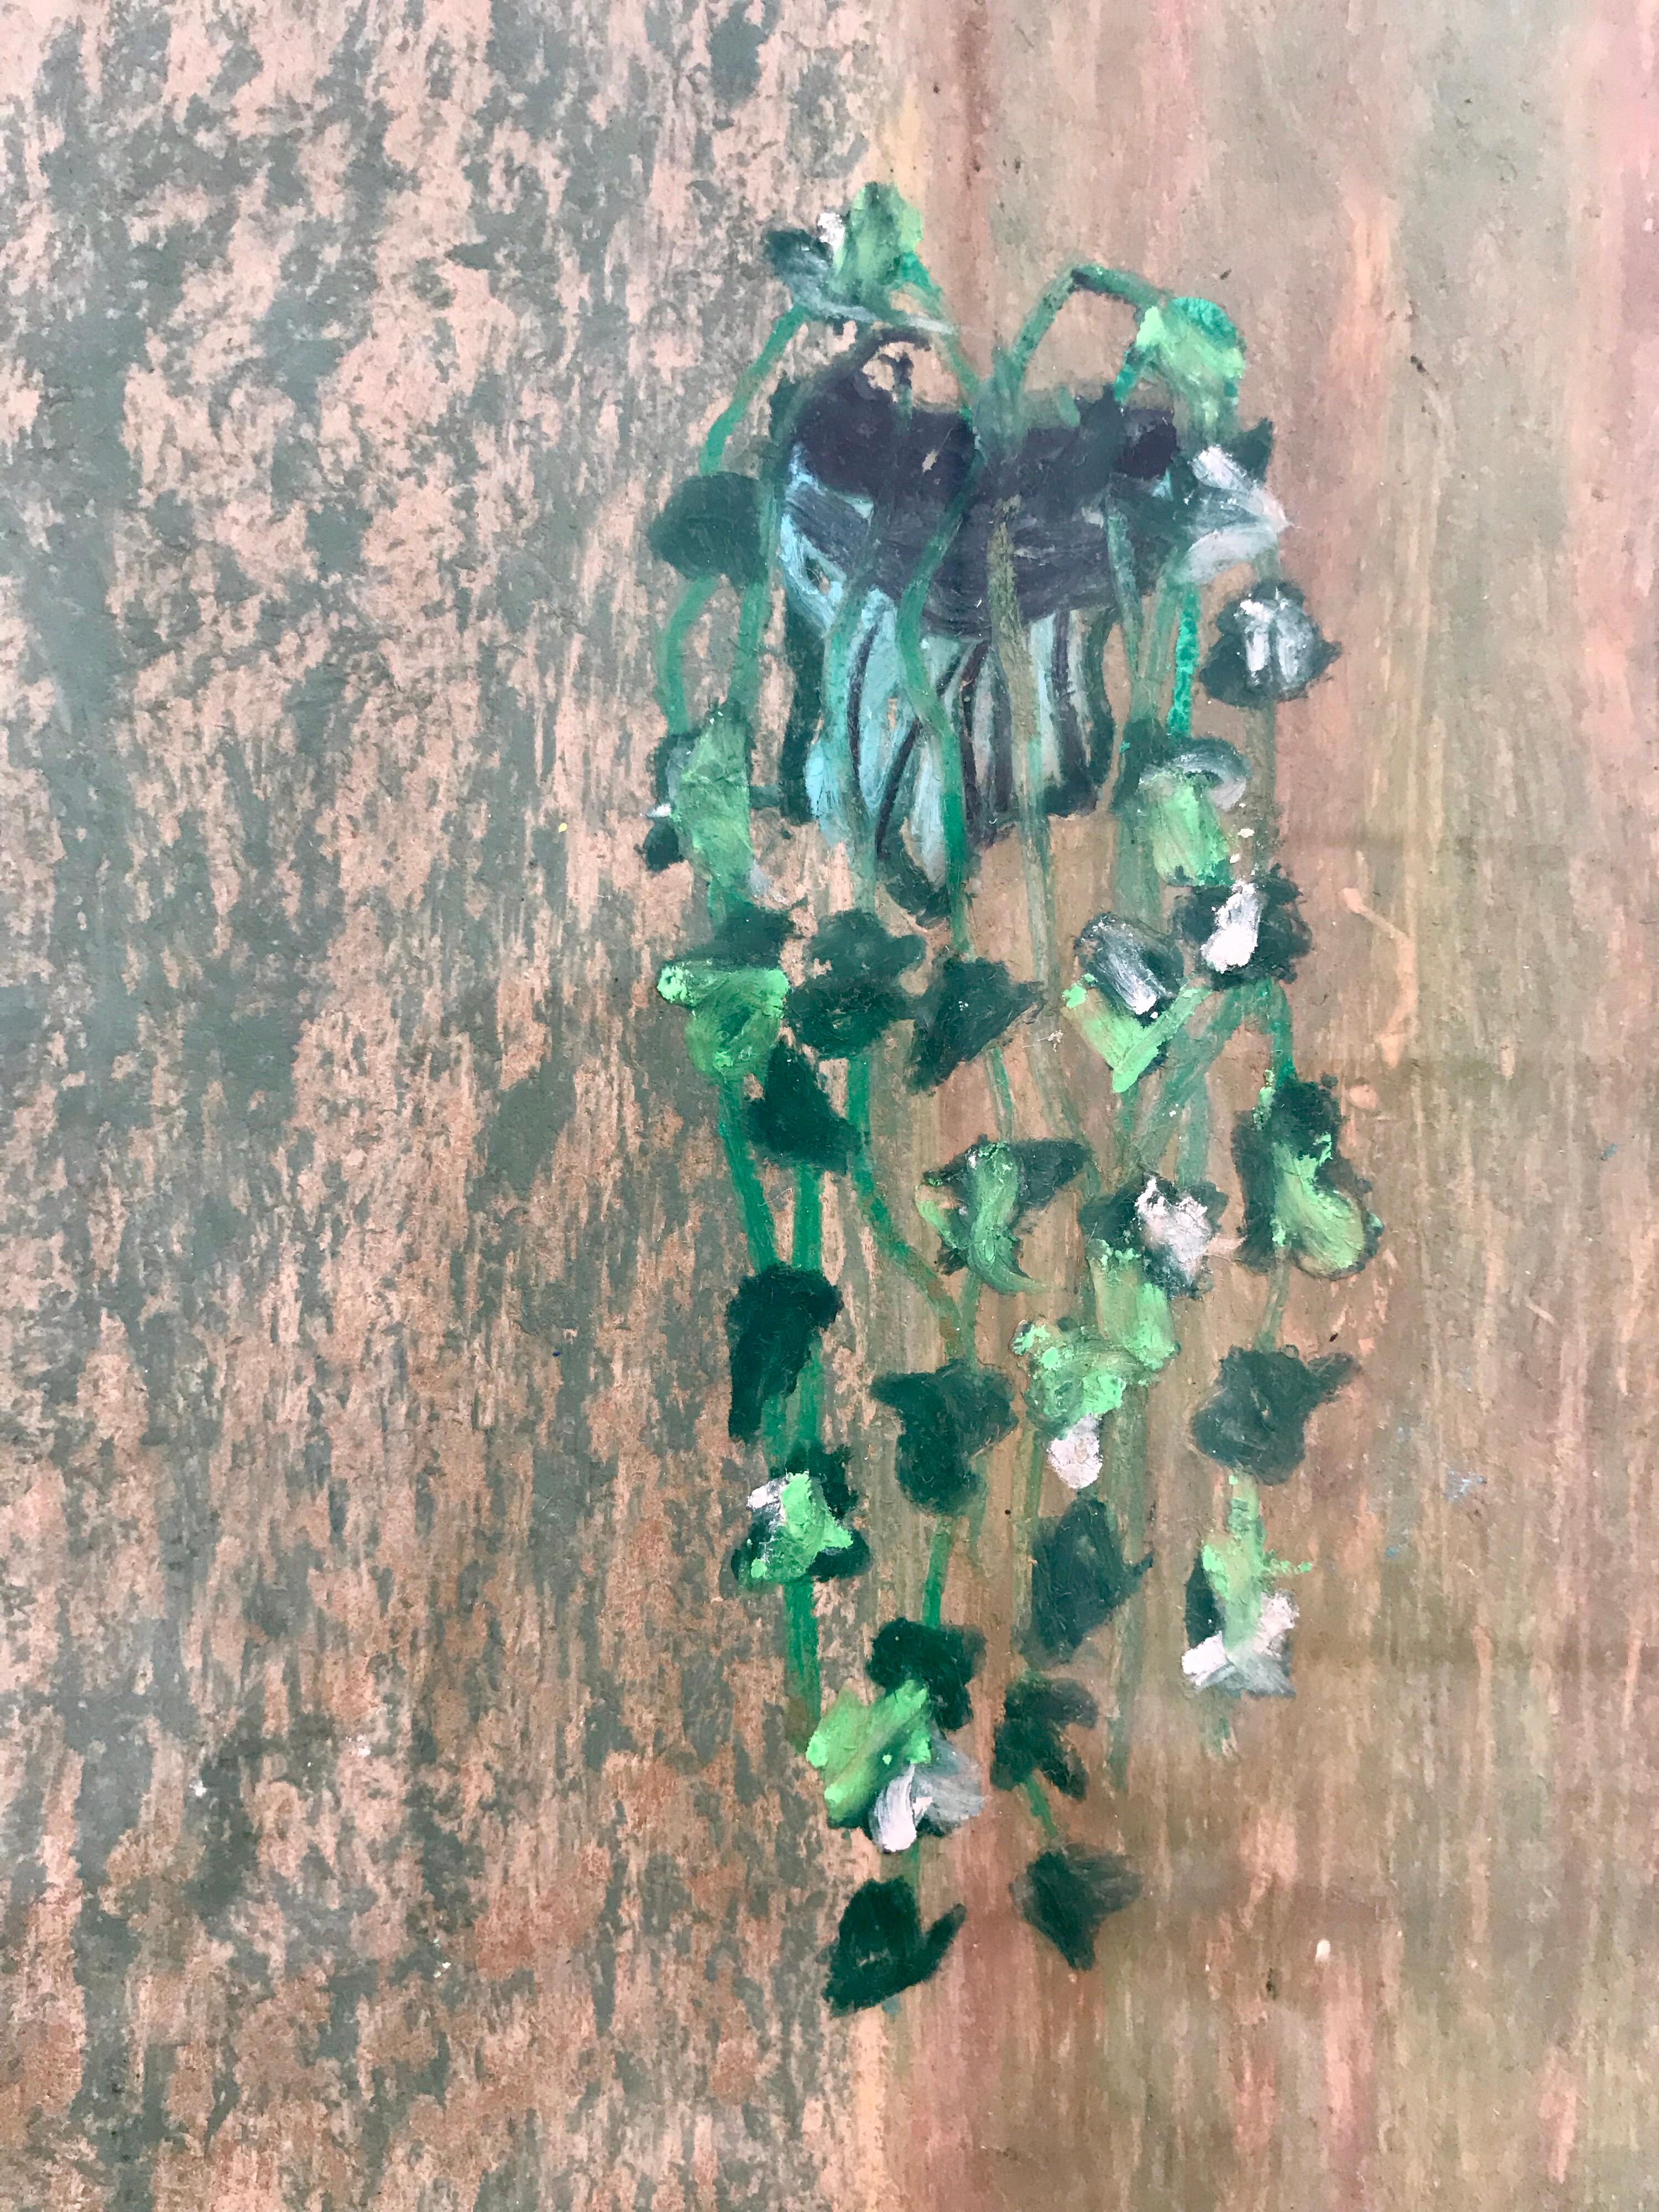 reginald ivy